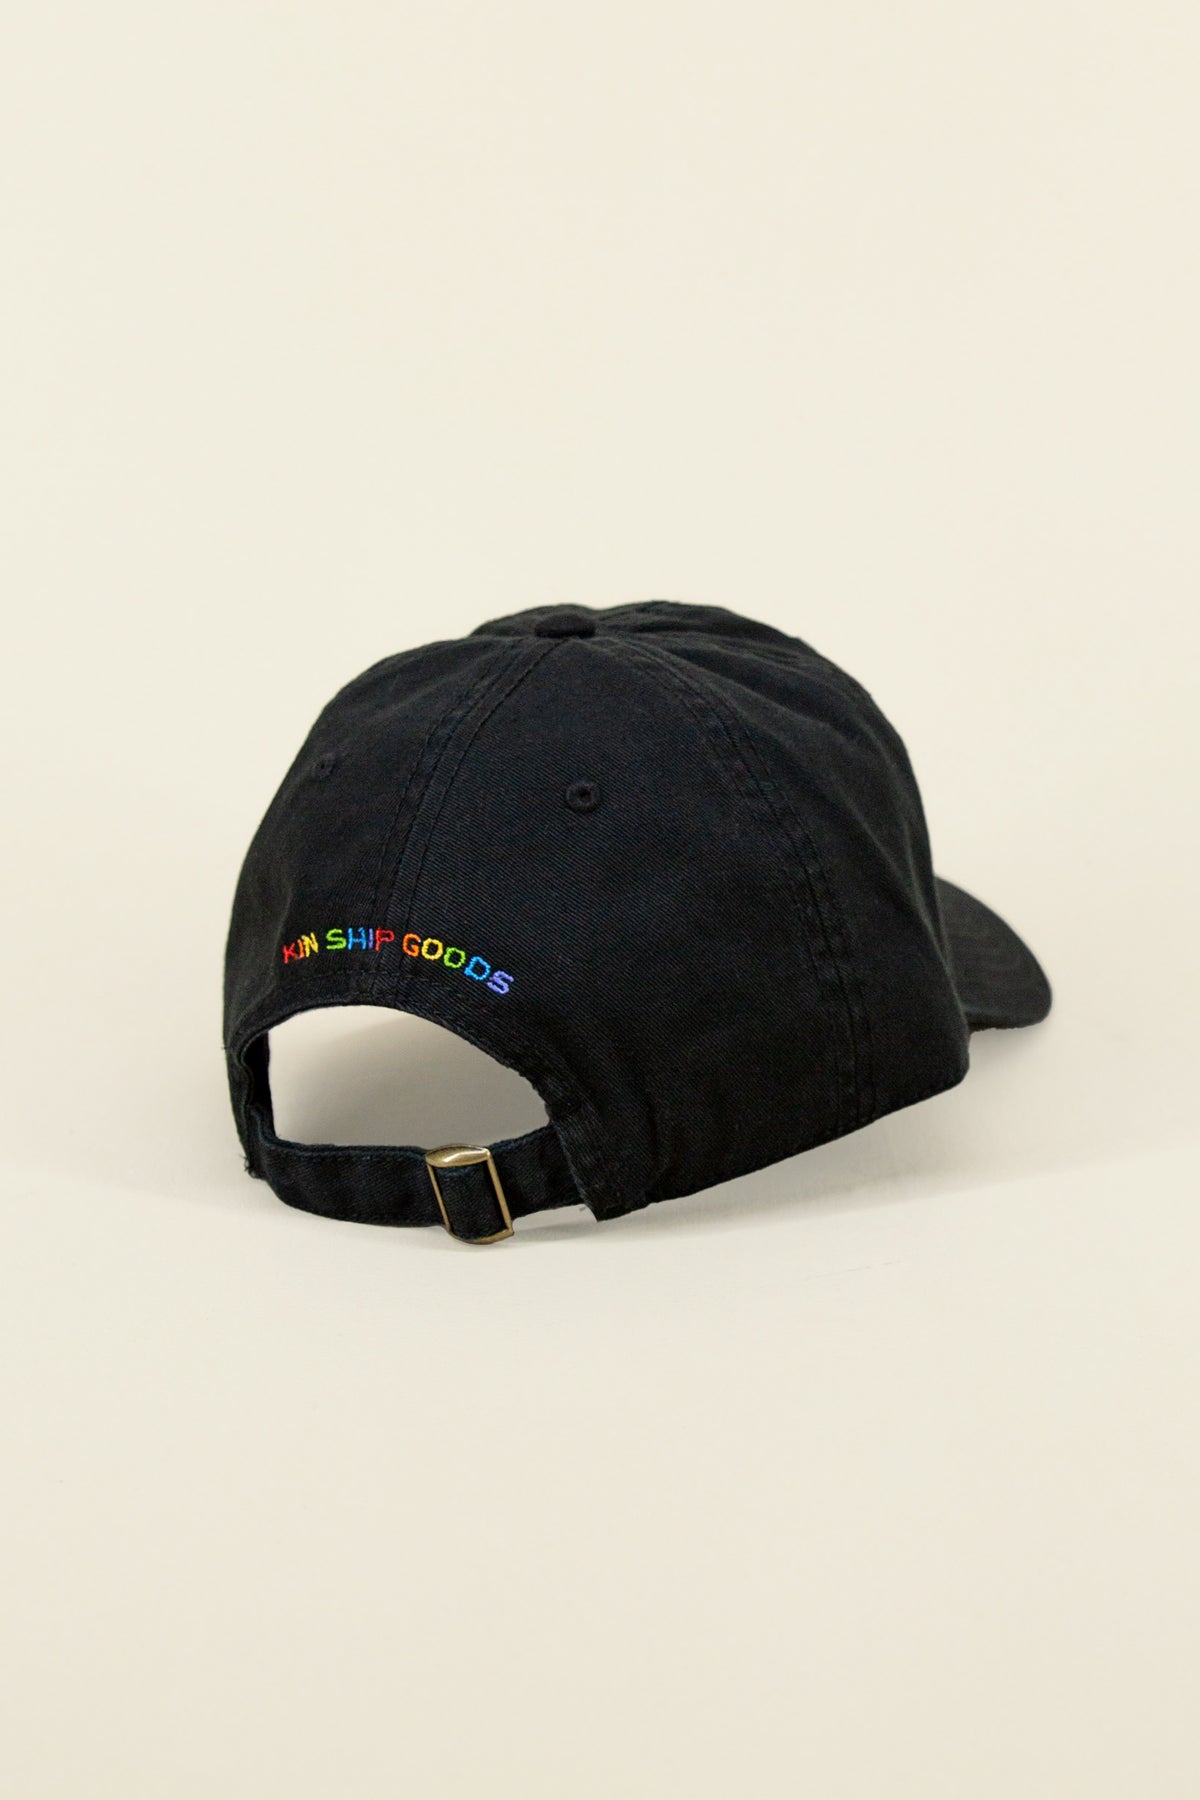 wv pride hat